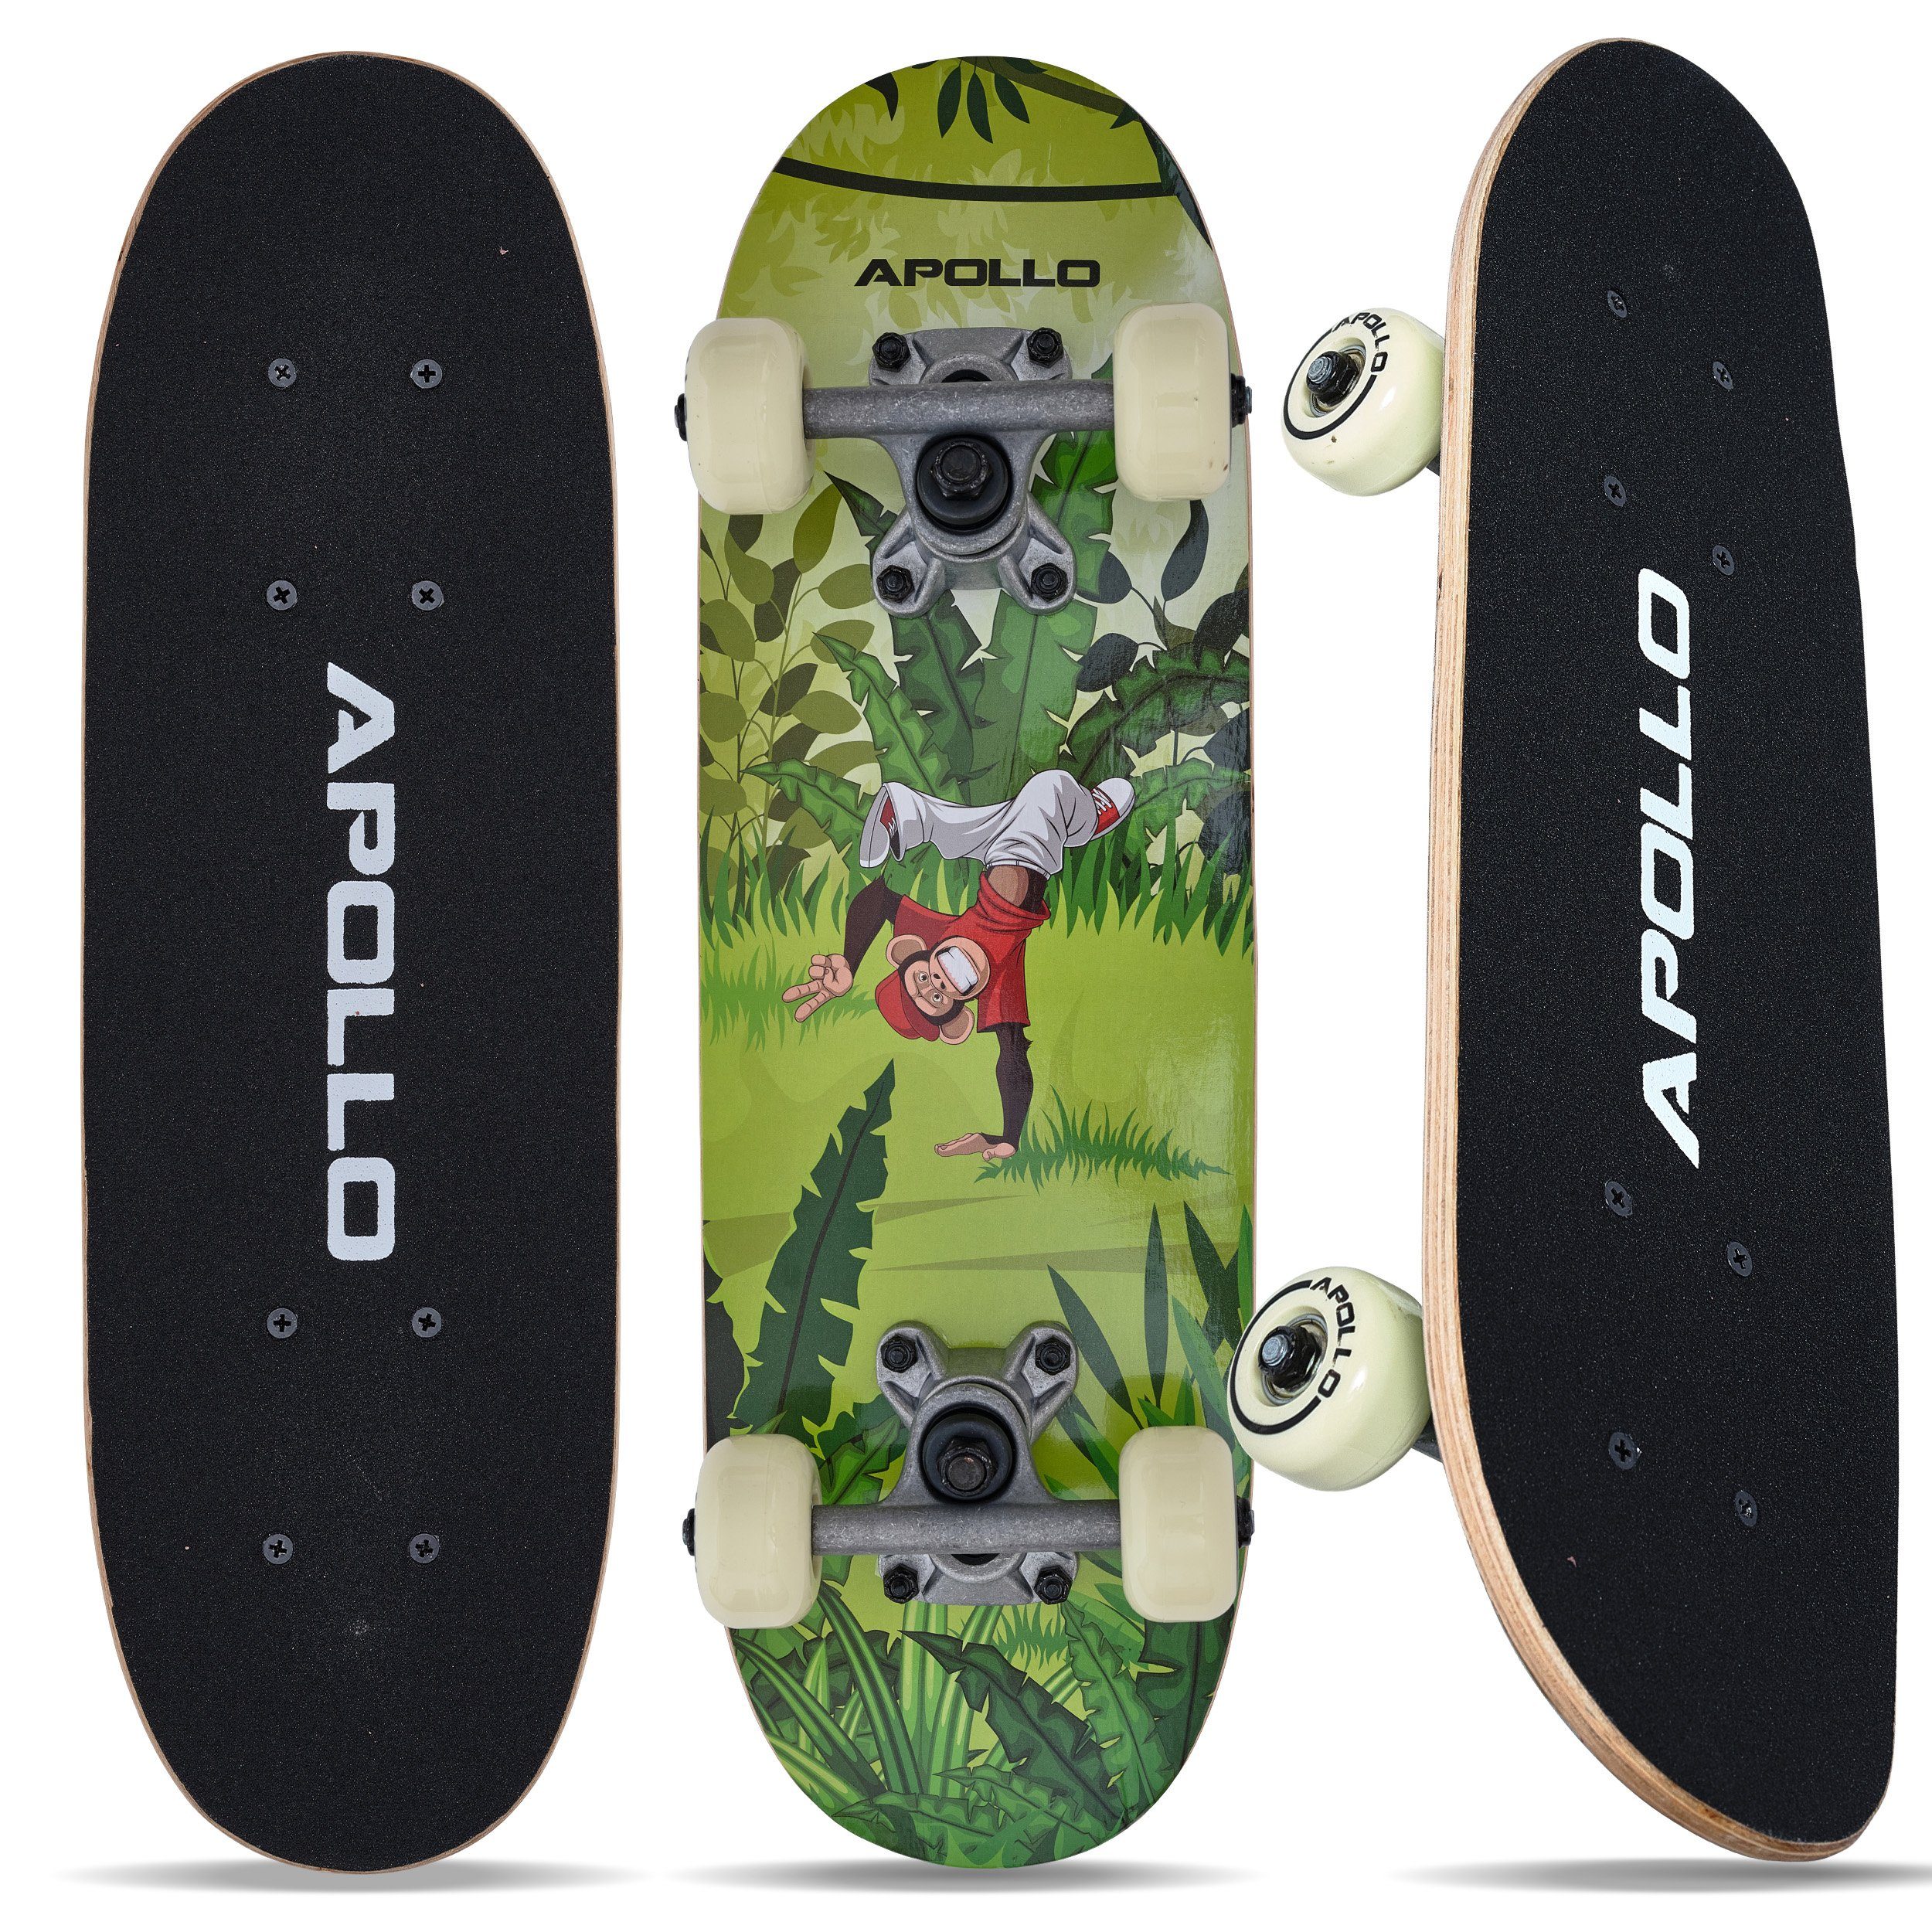 Kinder, Kinderskateboard Kinderskateboard Monkey Man Apollo Skateboard 20"